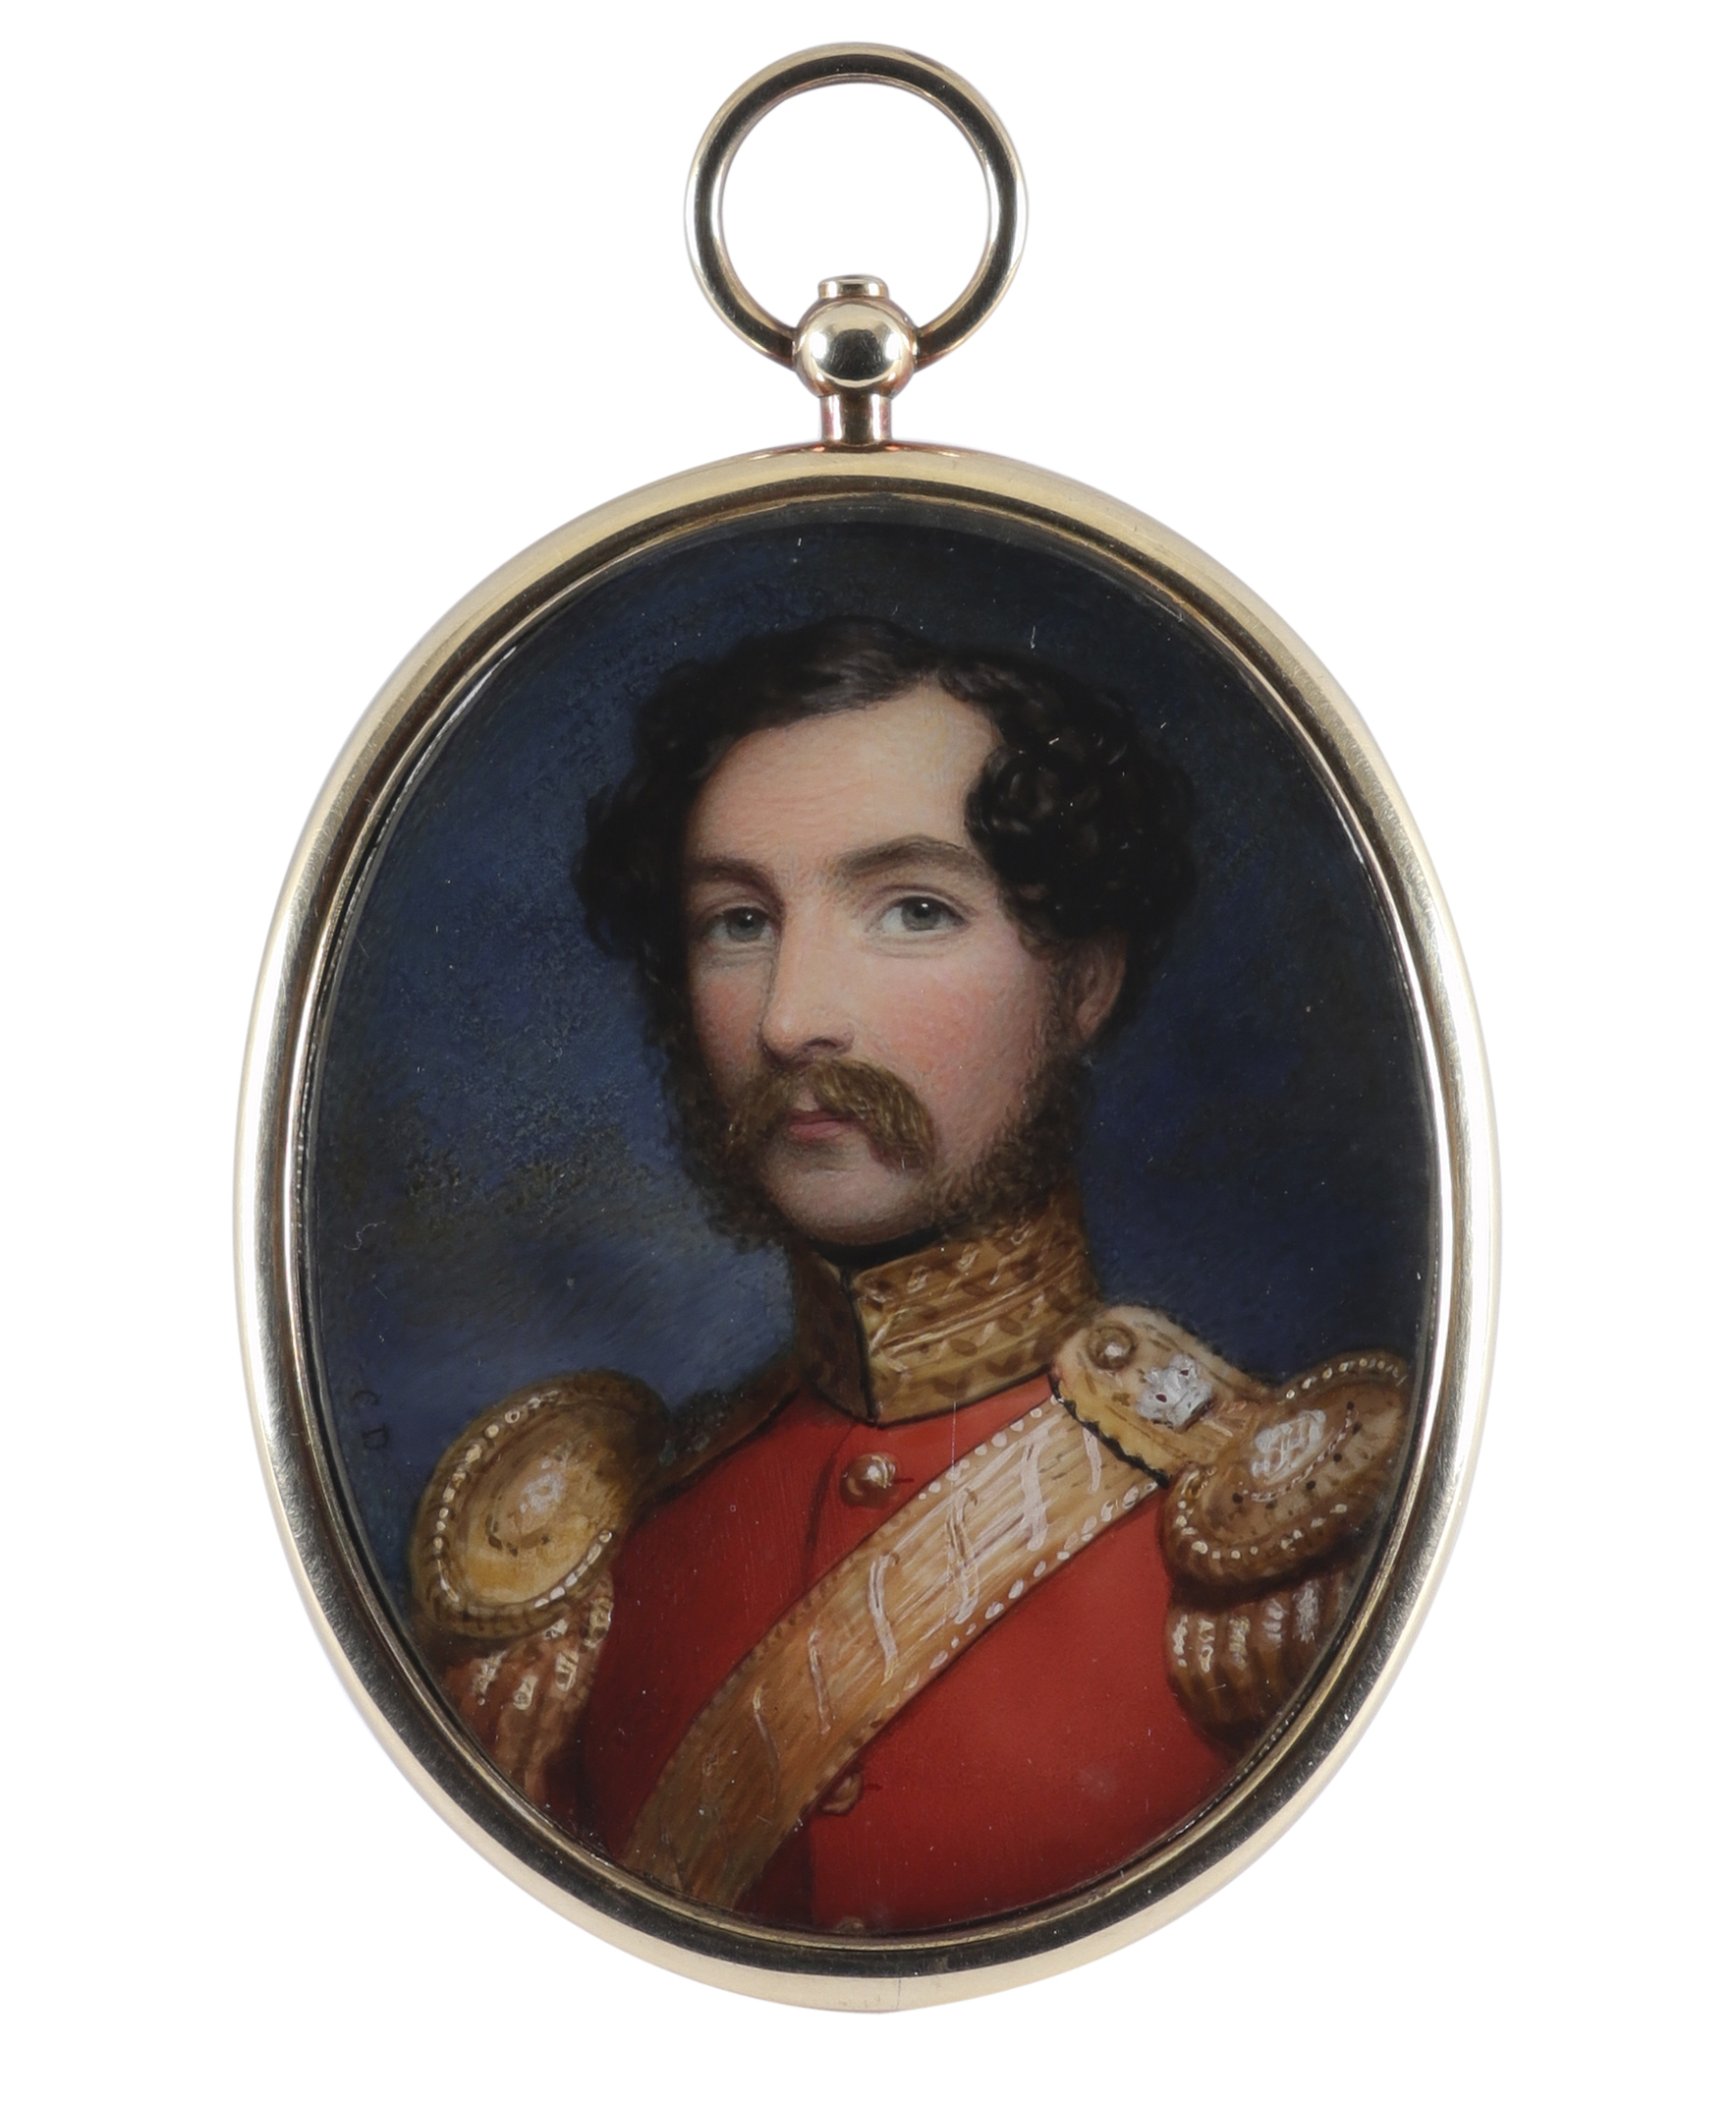 λCornelius Bevis Durham (1809-1884) Portrait miniature of a British army officer, wearing regimental